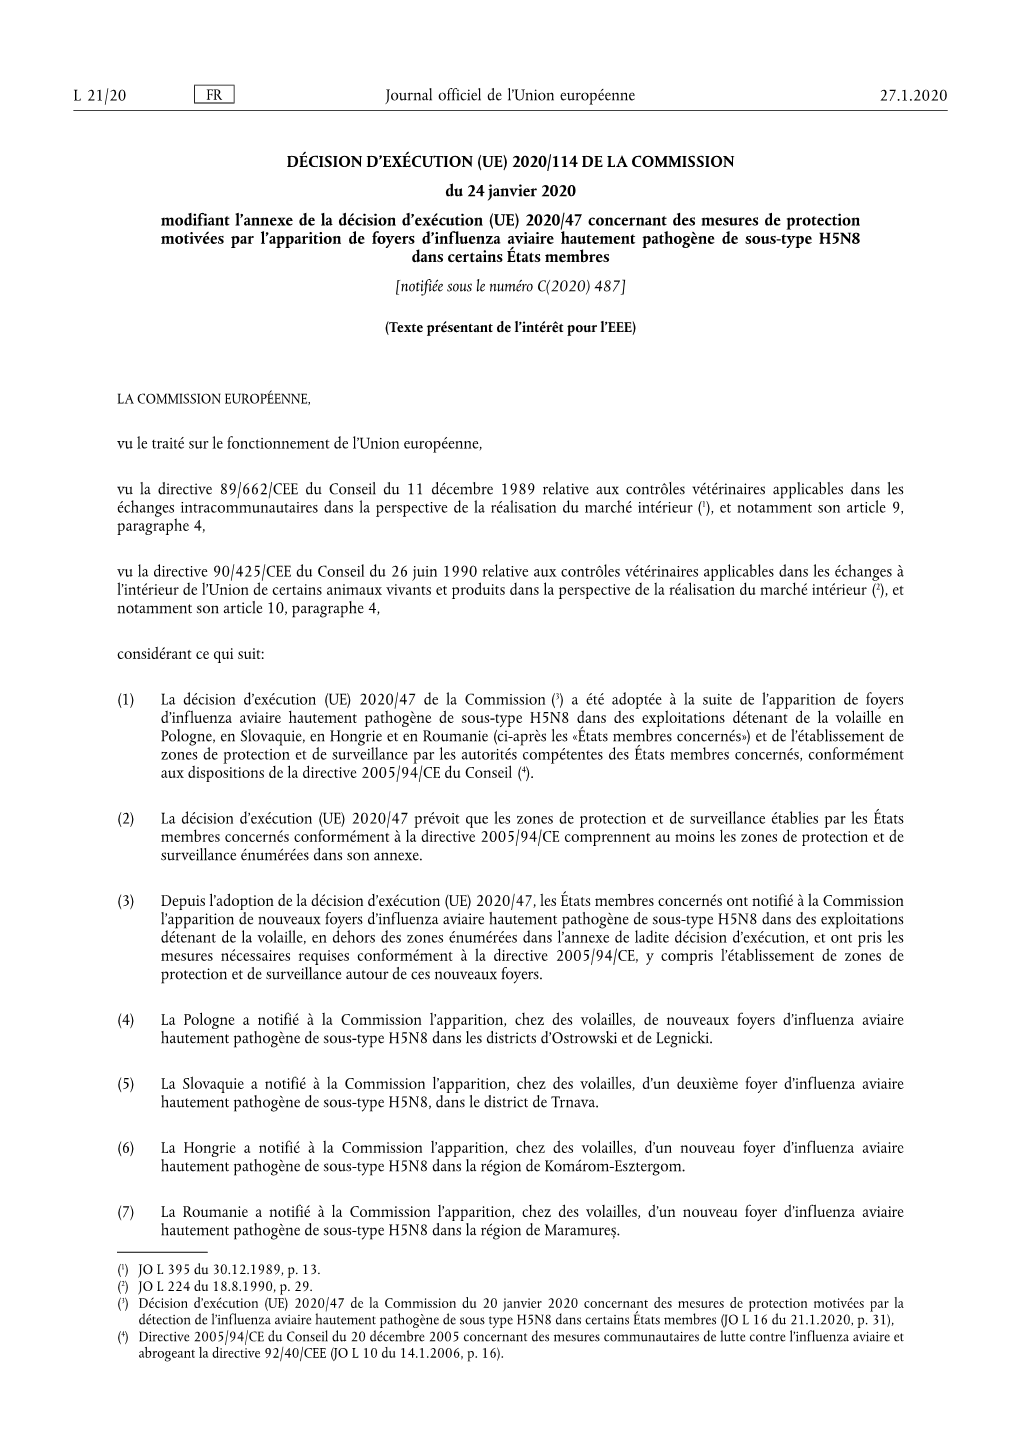 2020/114 DE LA COMMISSION Du 24 Janvier 2020 Modifiant L'annexe De La Décision D'exécution